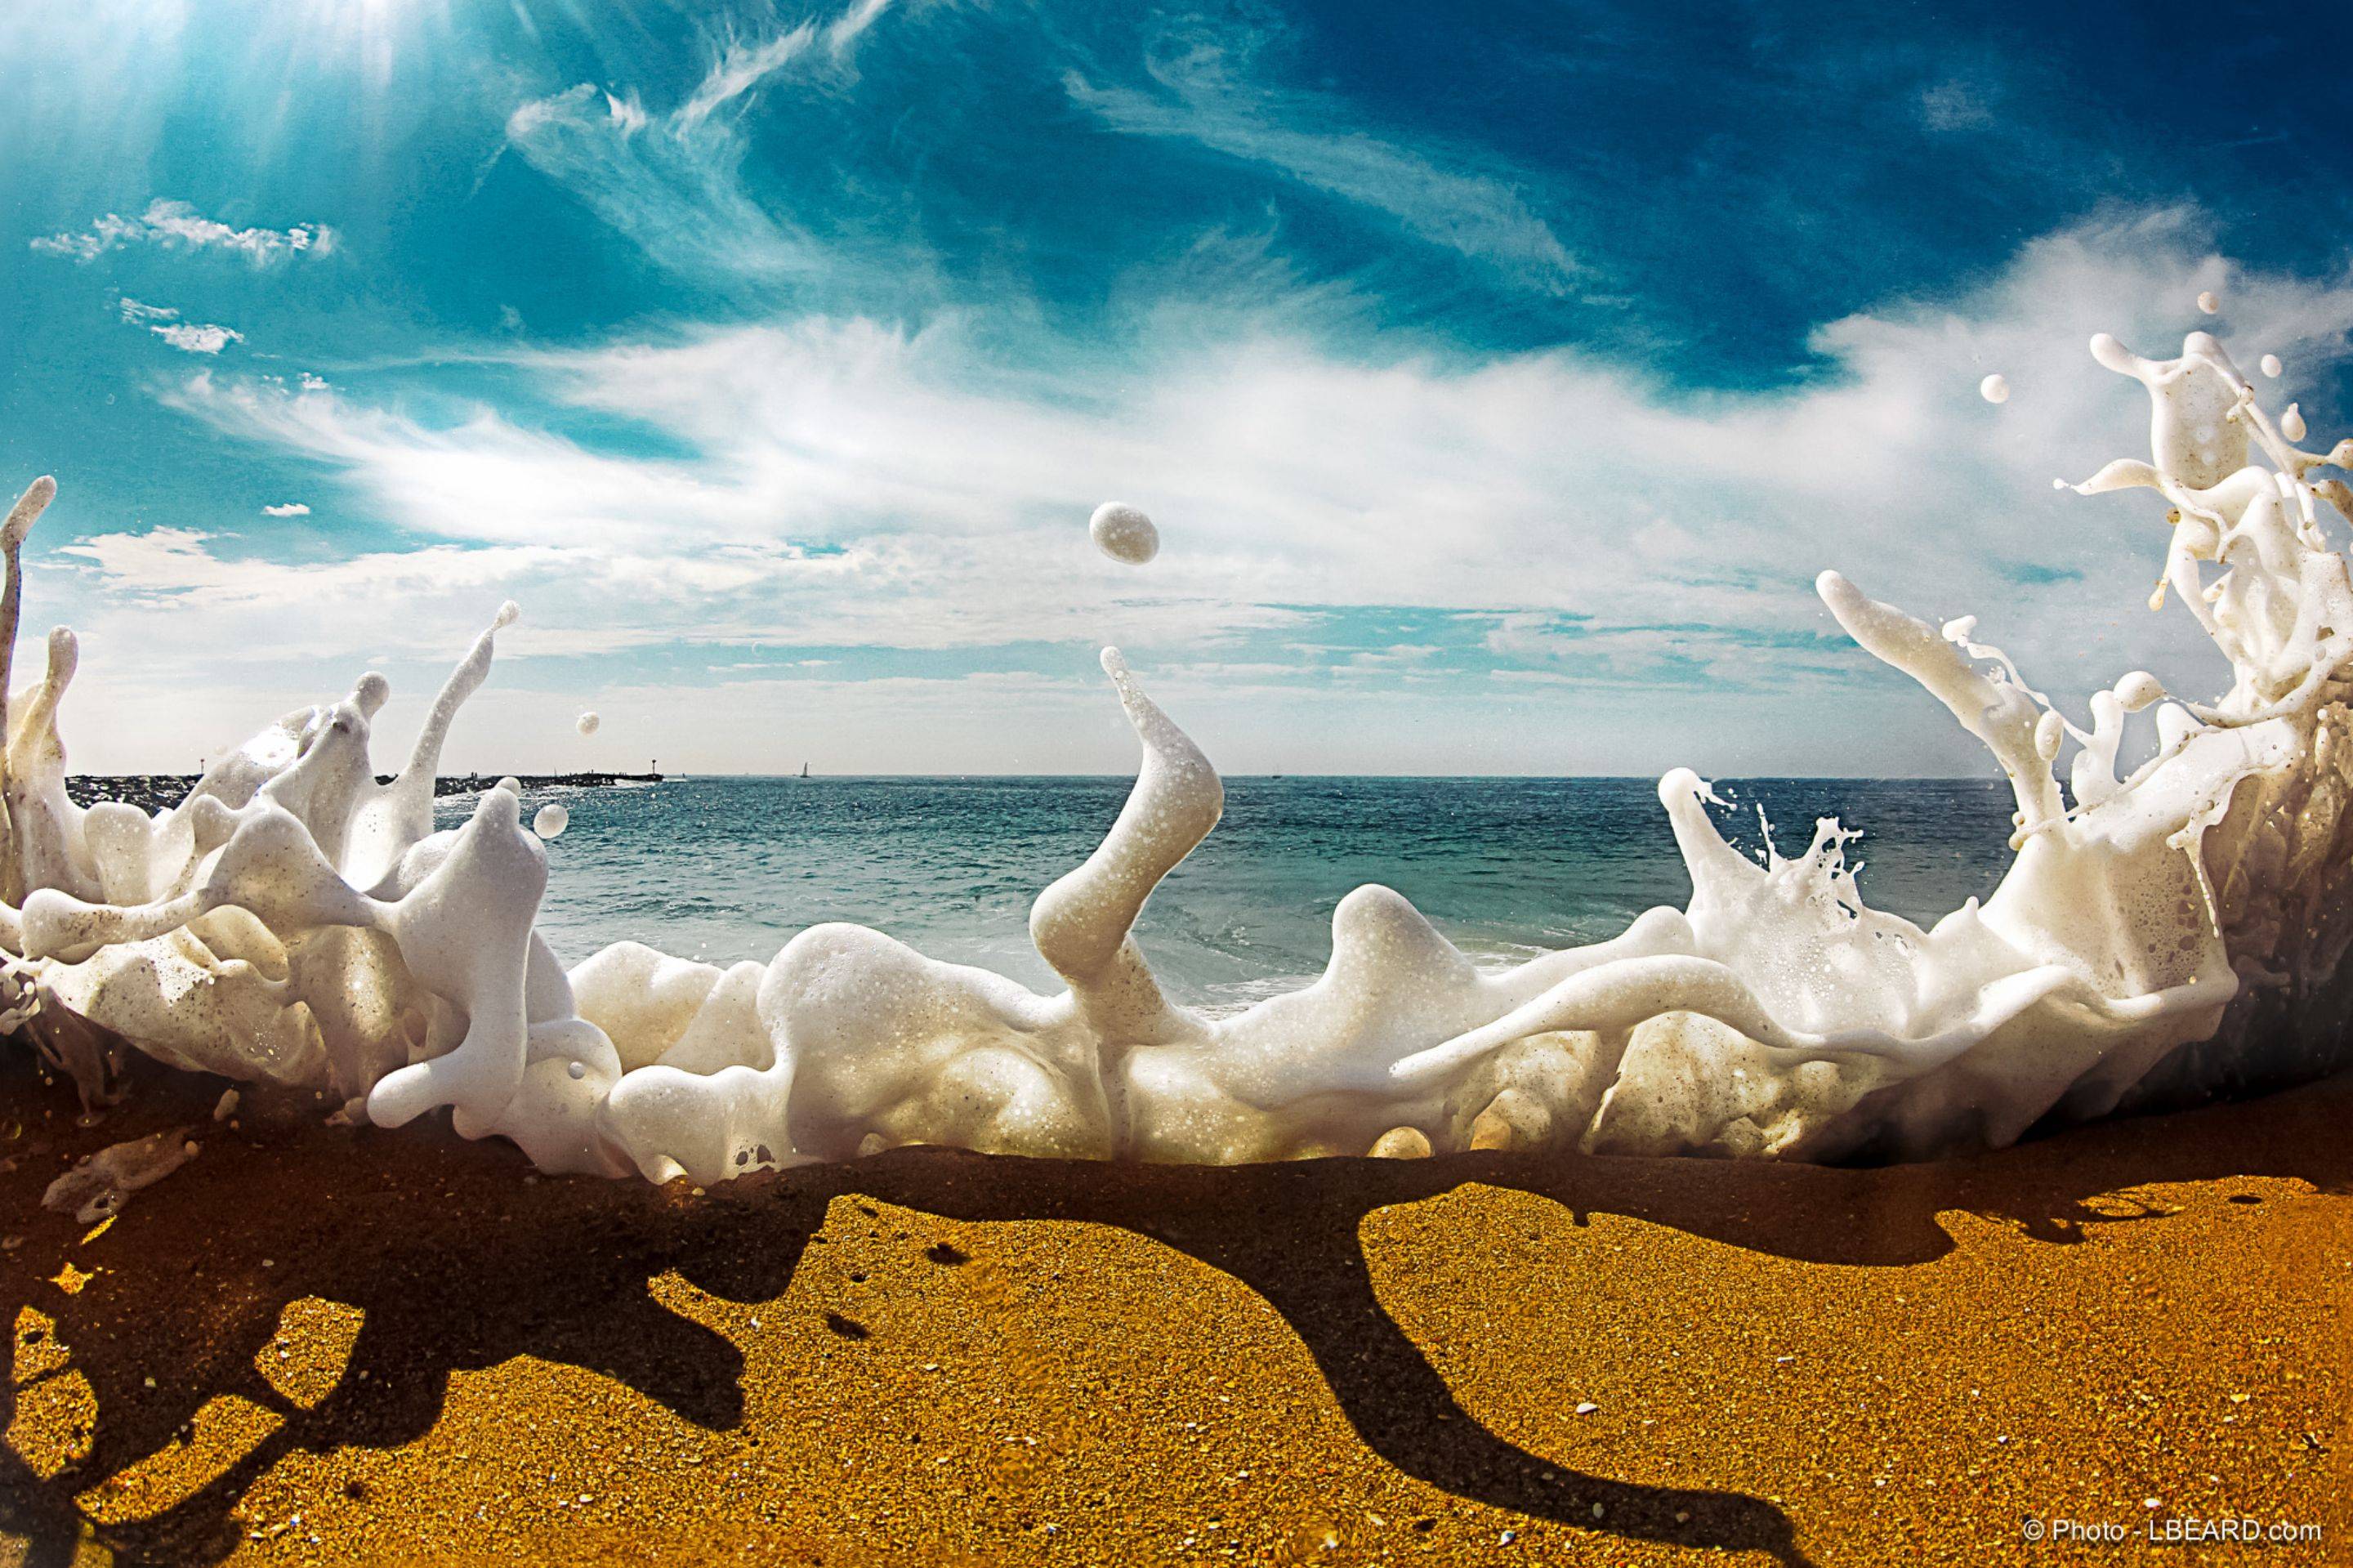 Sea foam crashes over the sand